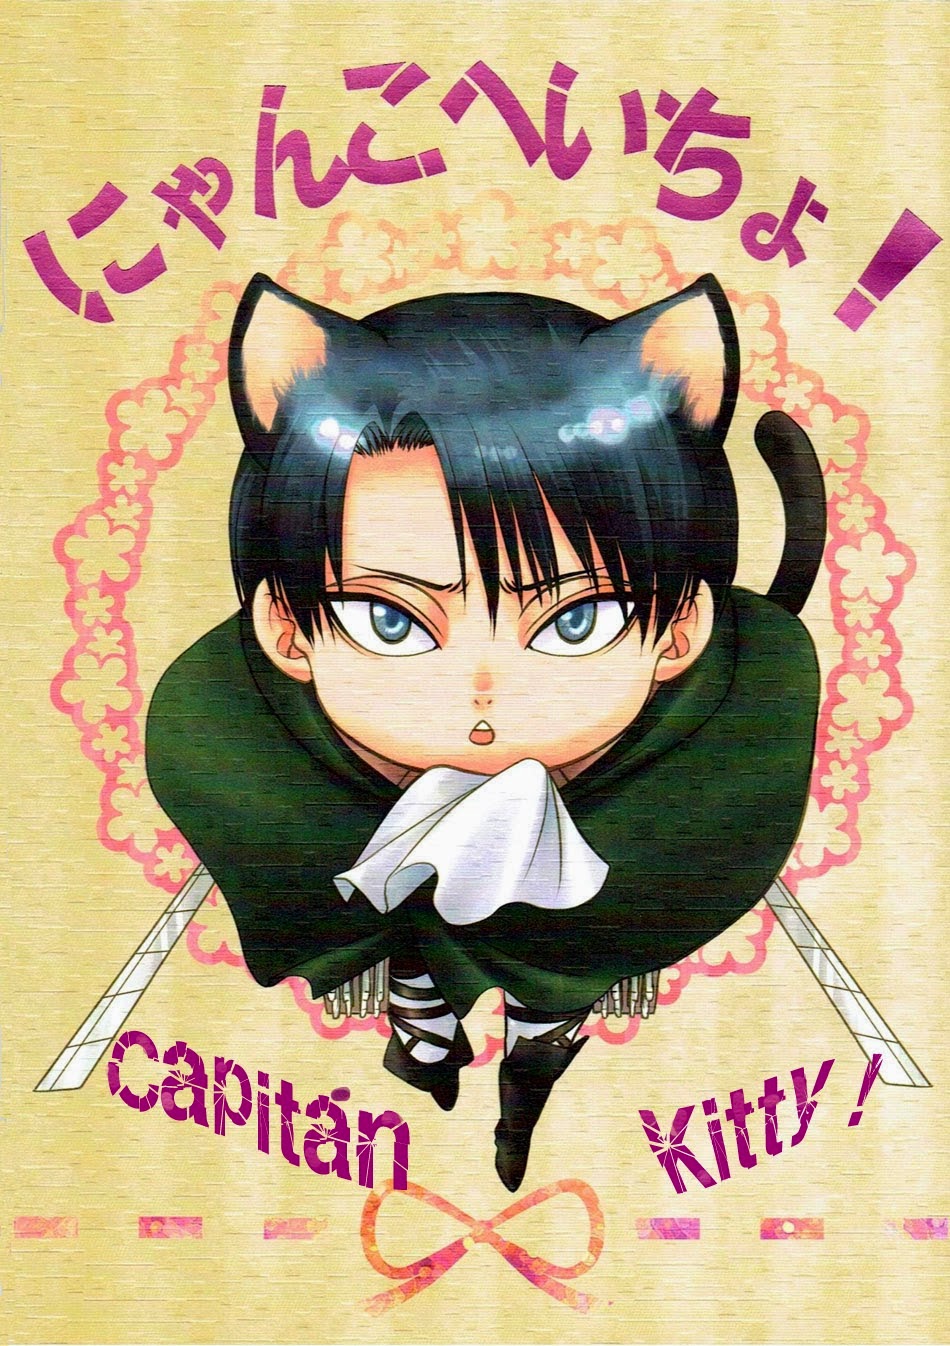 Capitán Kitty